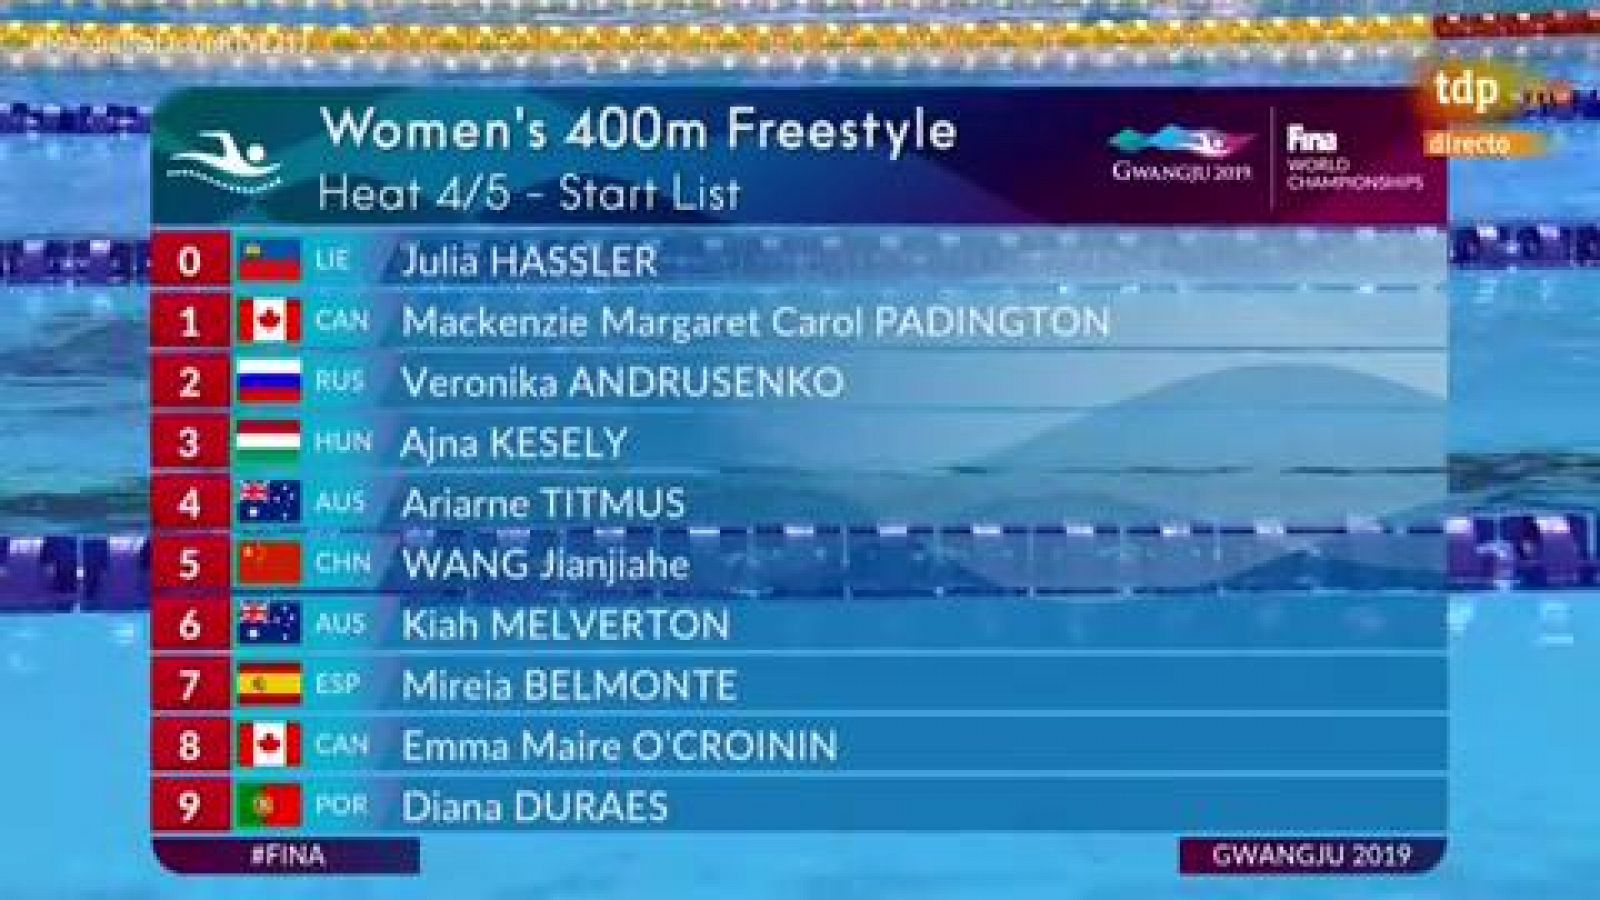 La nadadora española Mireia Belmonte quedó decimoquinta en las preliminares de 400 libre, con un tiempo de 4:10.82, por lo que no pasó el corte y no estará en la final de la categoría.